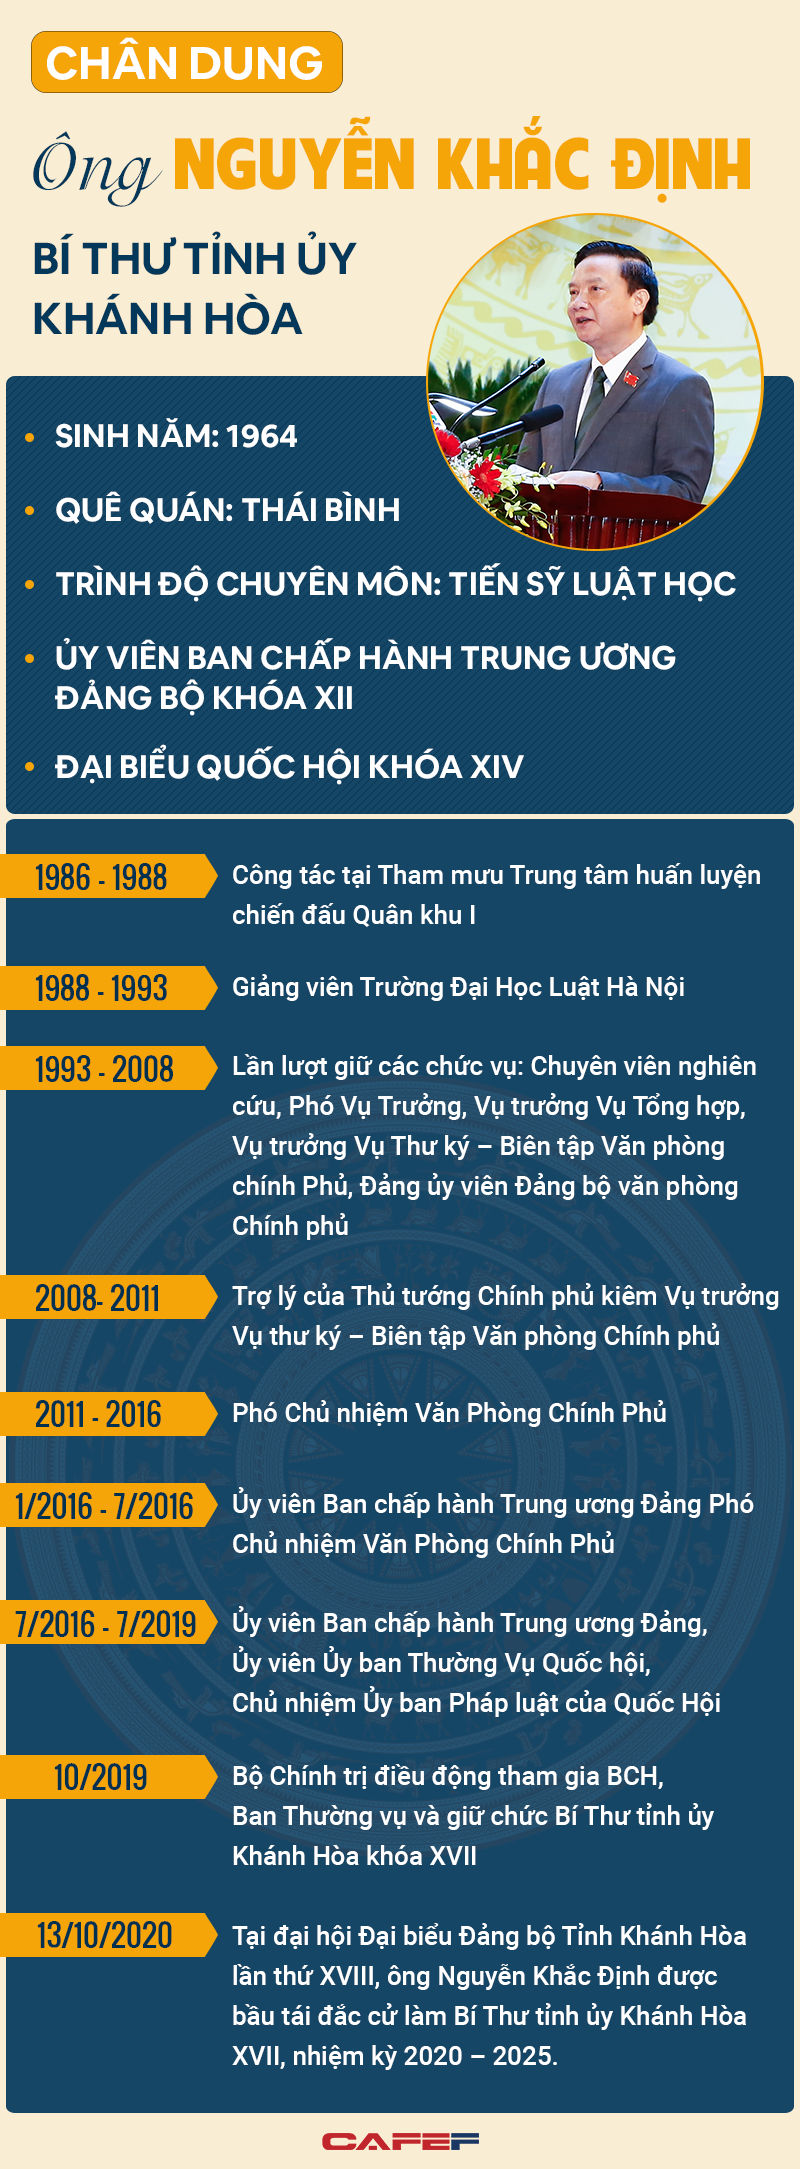 [Infographic]: Chân dung Bí thư Tỉnh ủy Khánh Hòa Nguyễn Khắc Định - Ảnh 1.